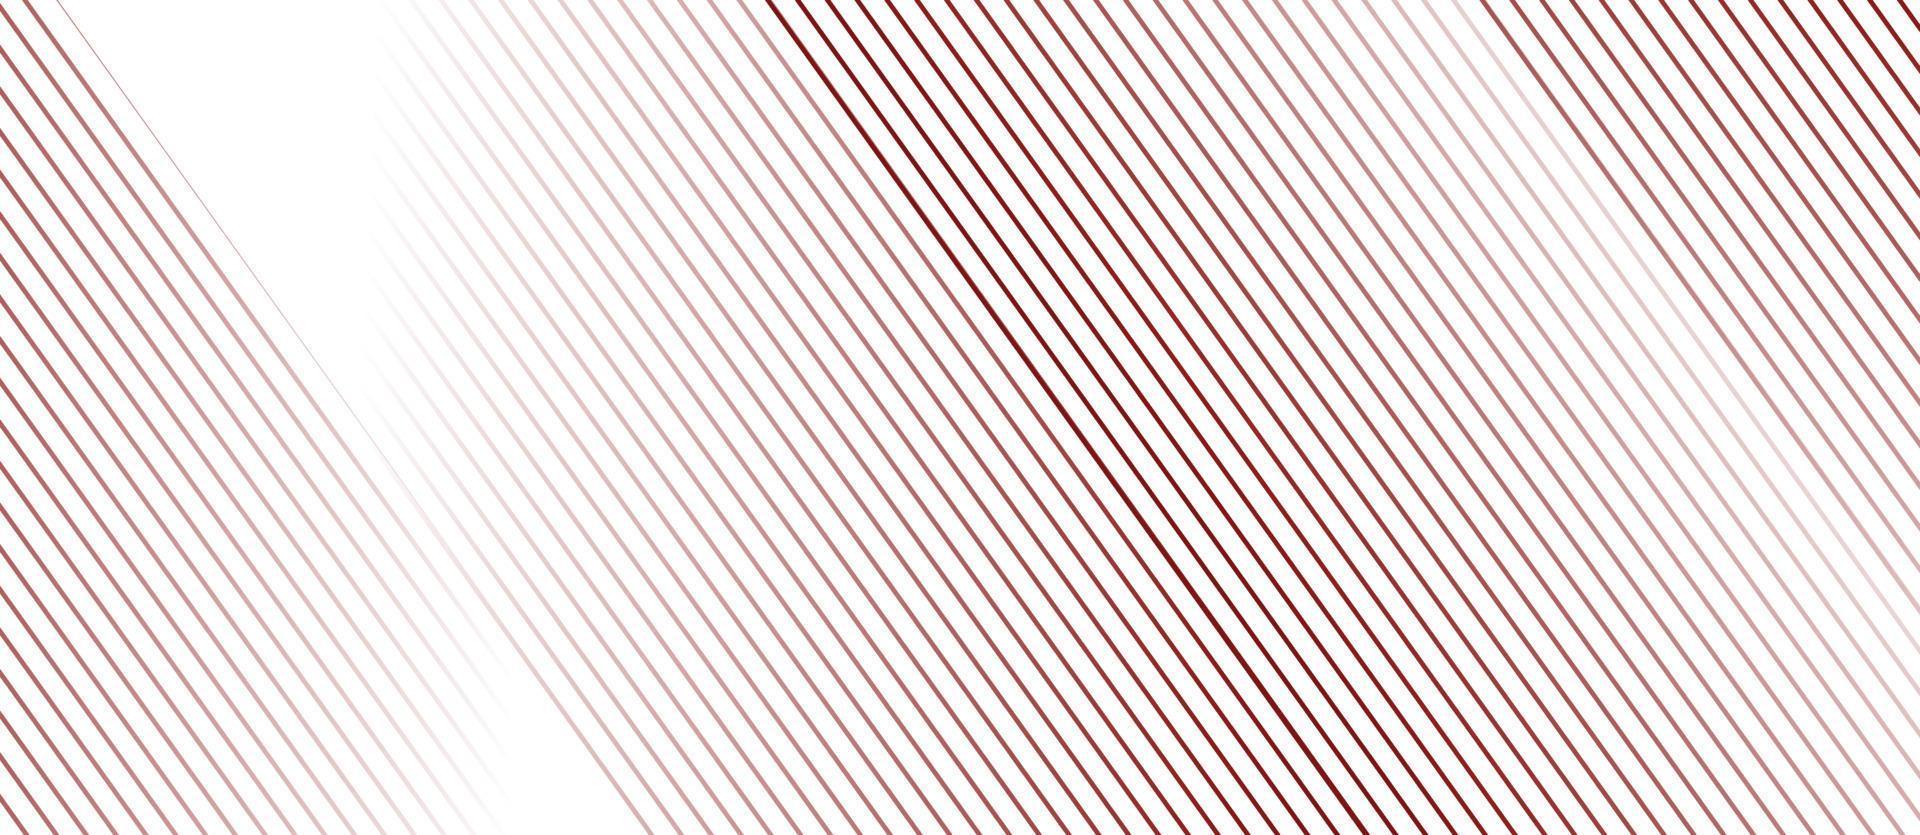 línea de fondo de patrón abstracto. composición de línea diseño minimalista simple. fondo rayado con diseño de rayas. diseño de onda de líneas de fondo. fondo de línea de raya diagonal degradado blanco vector